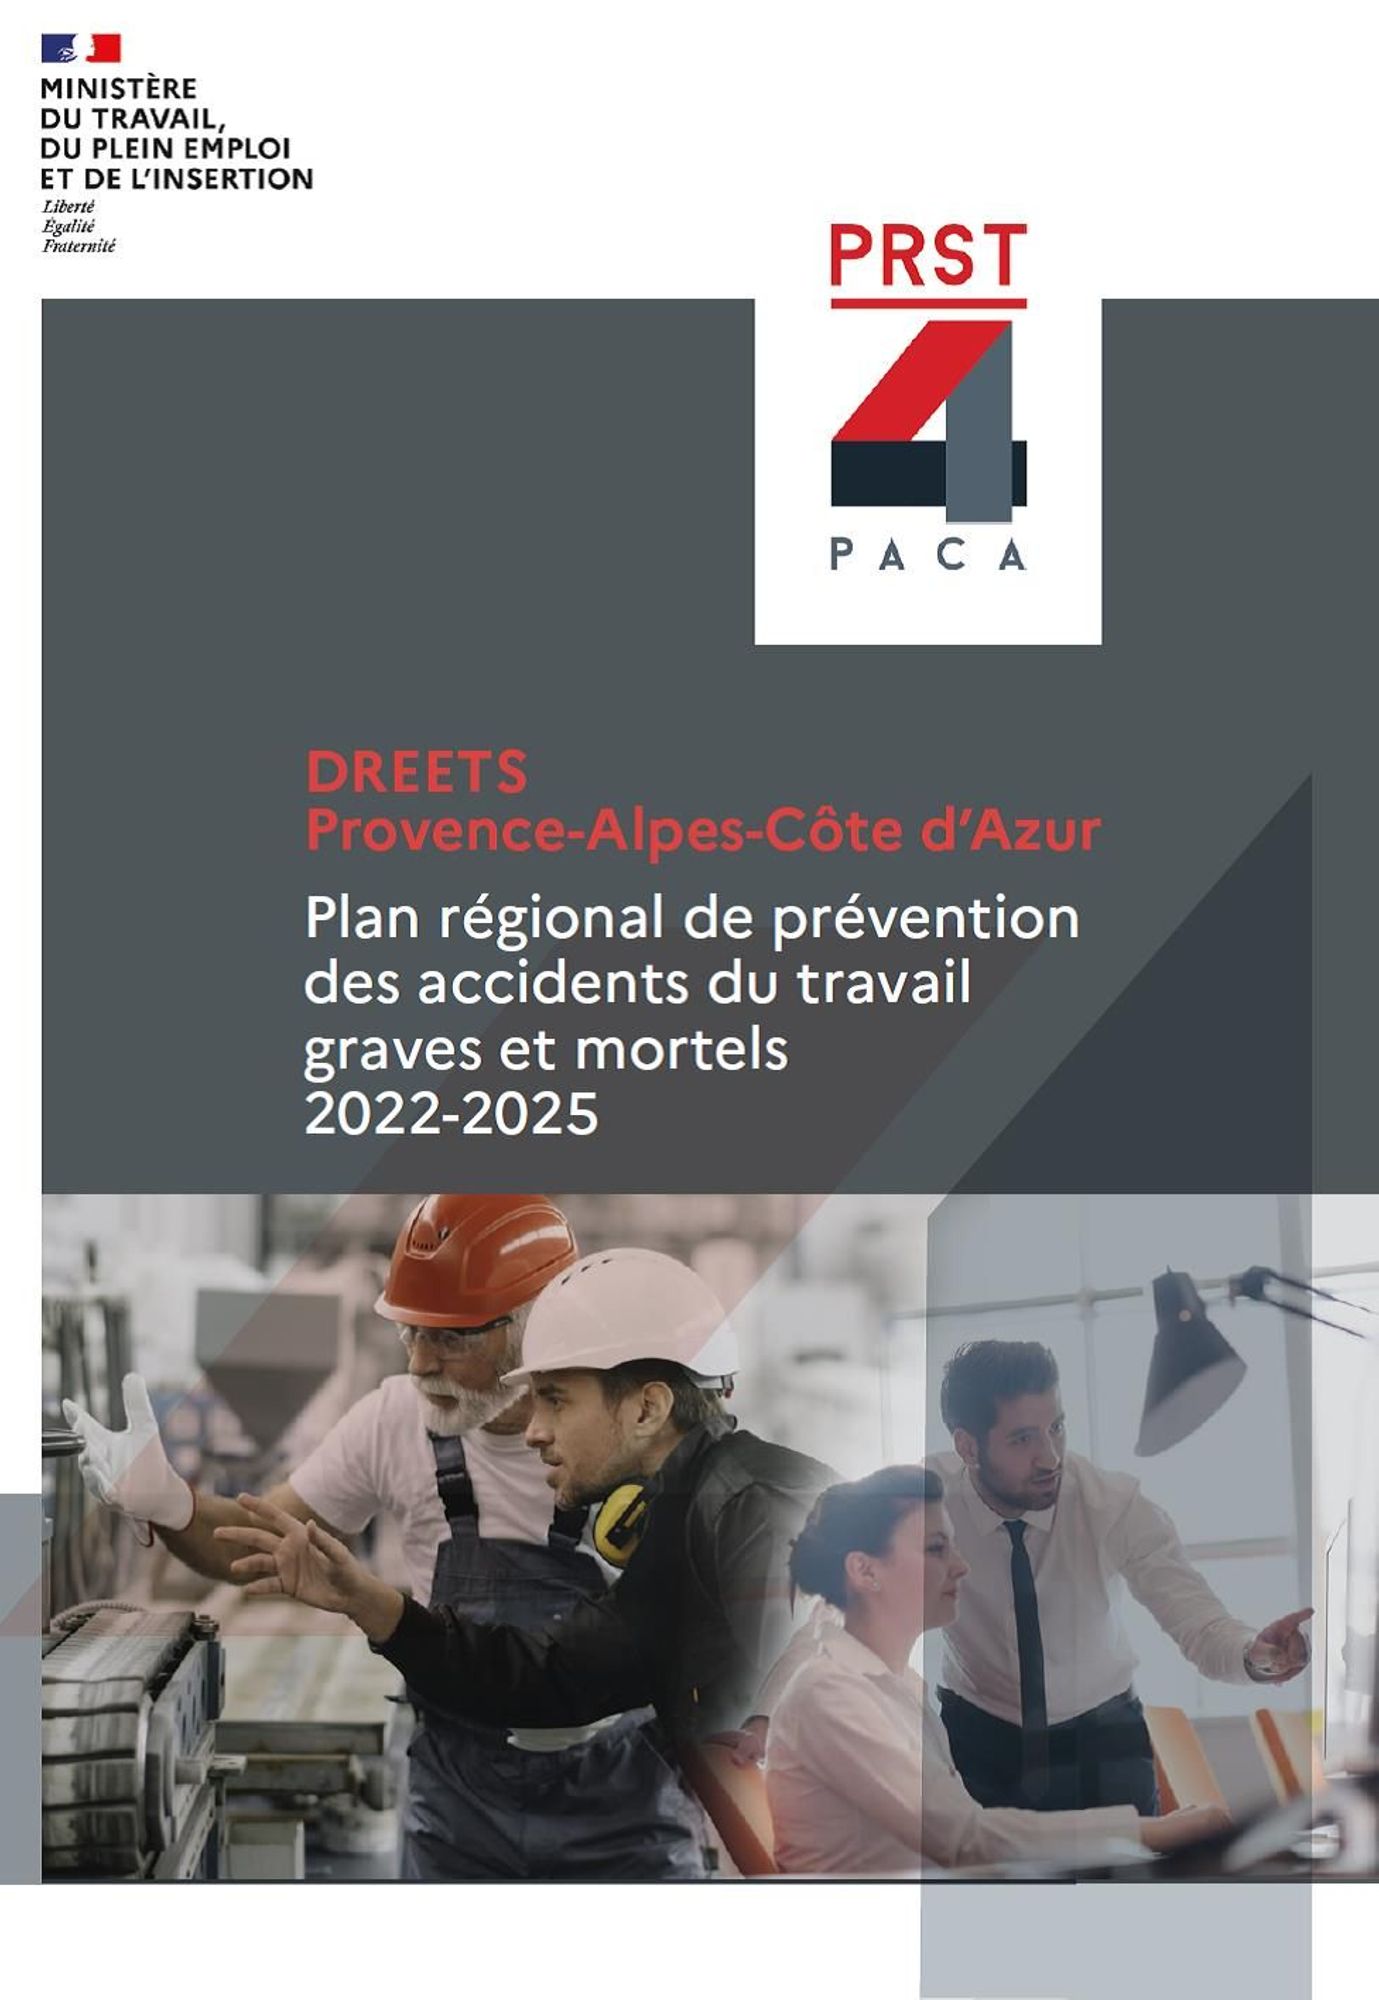 Plan régional pour prévenir les accidents du travail graves et mortels 2022-2025